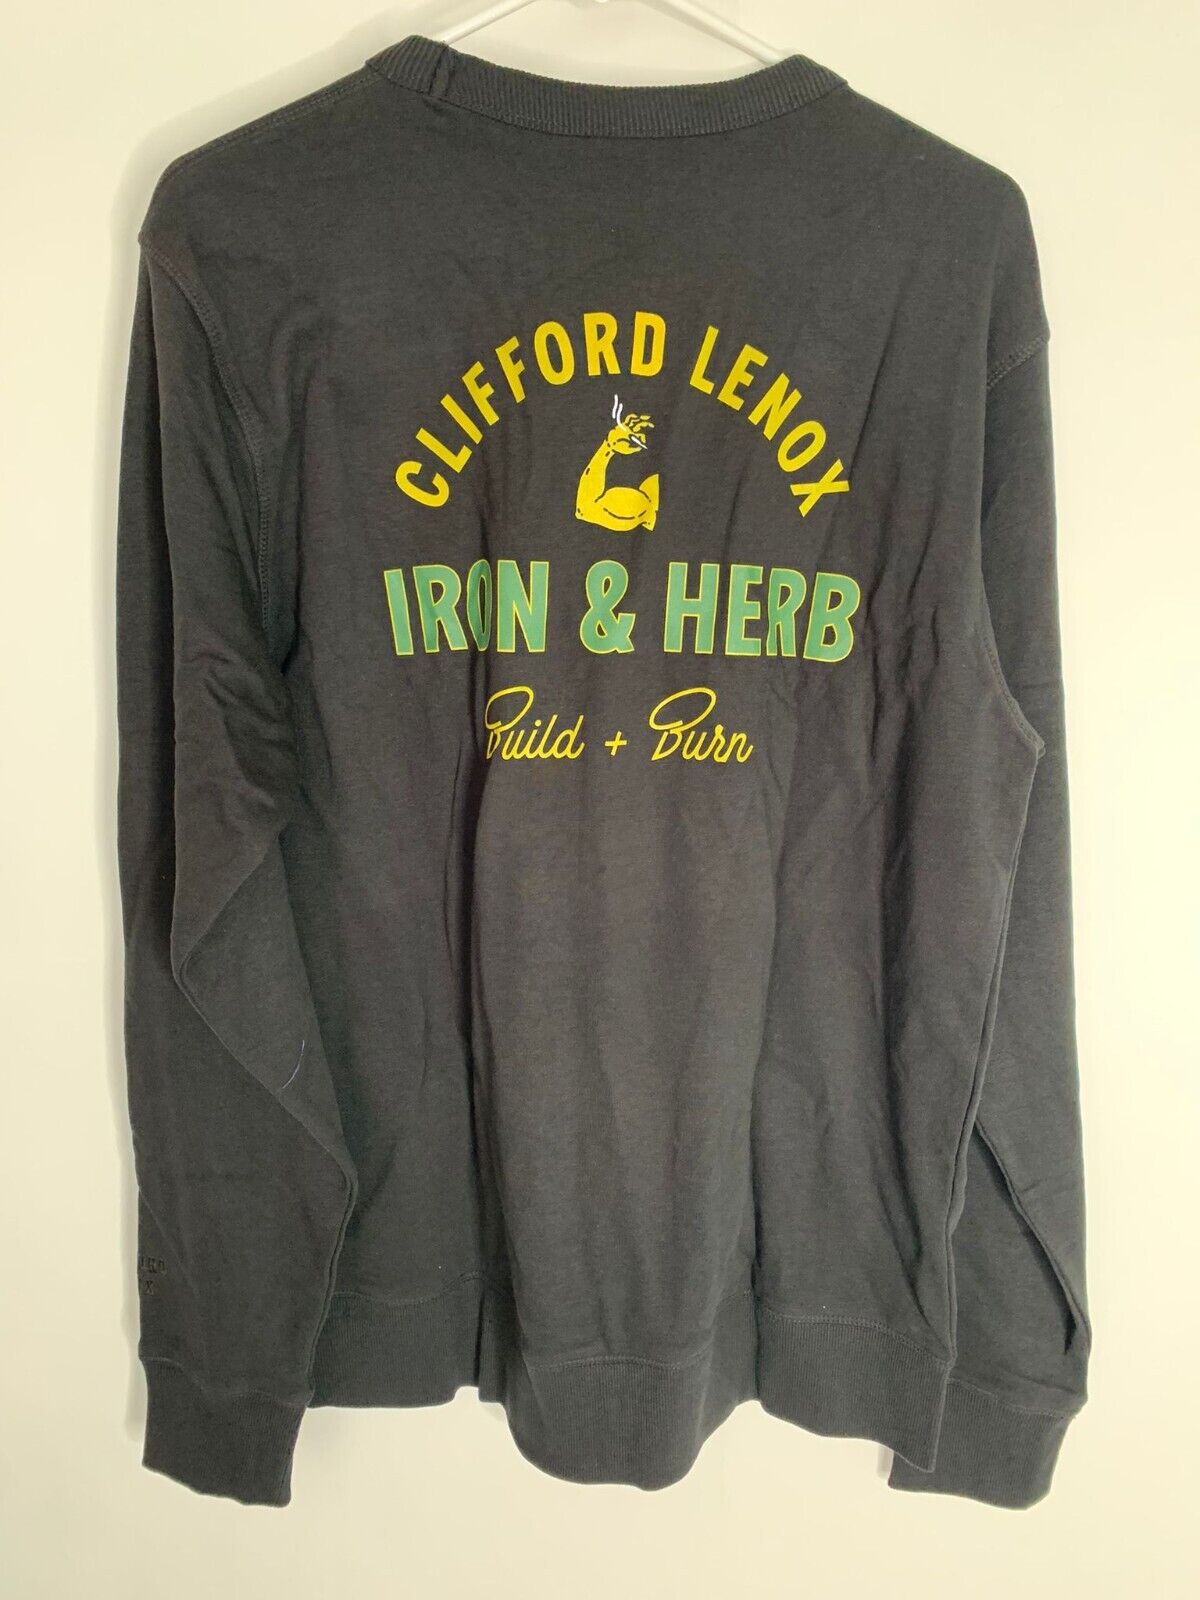 Clifford Lenox Adult Mens M Build & Burn Core Crewneck Sweatshirt Pullover